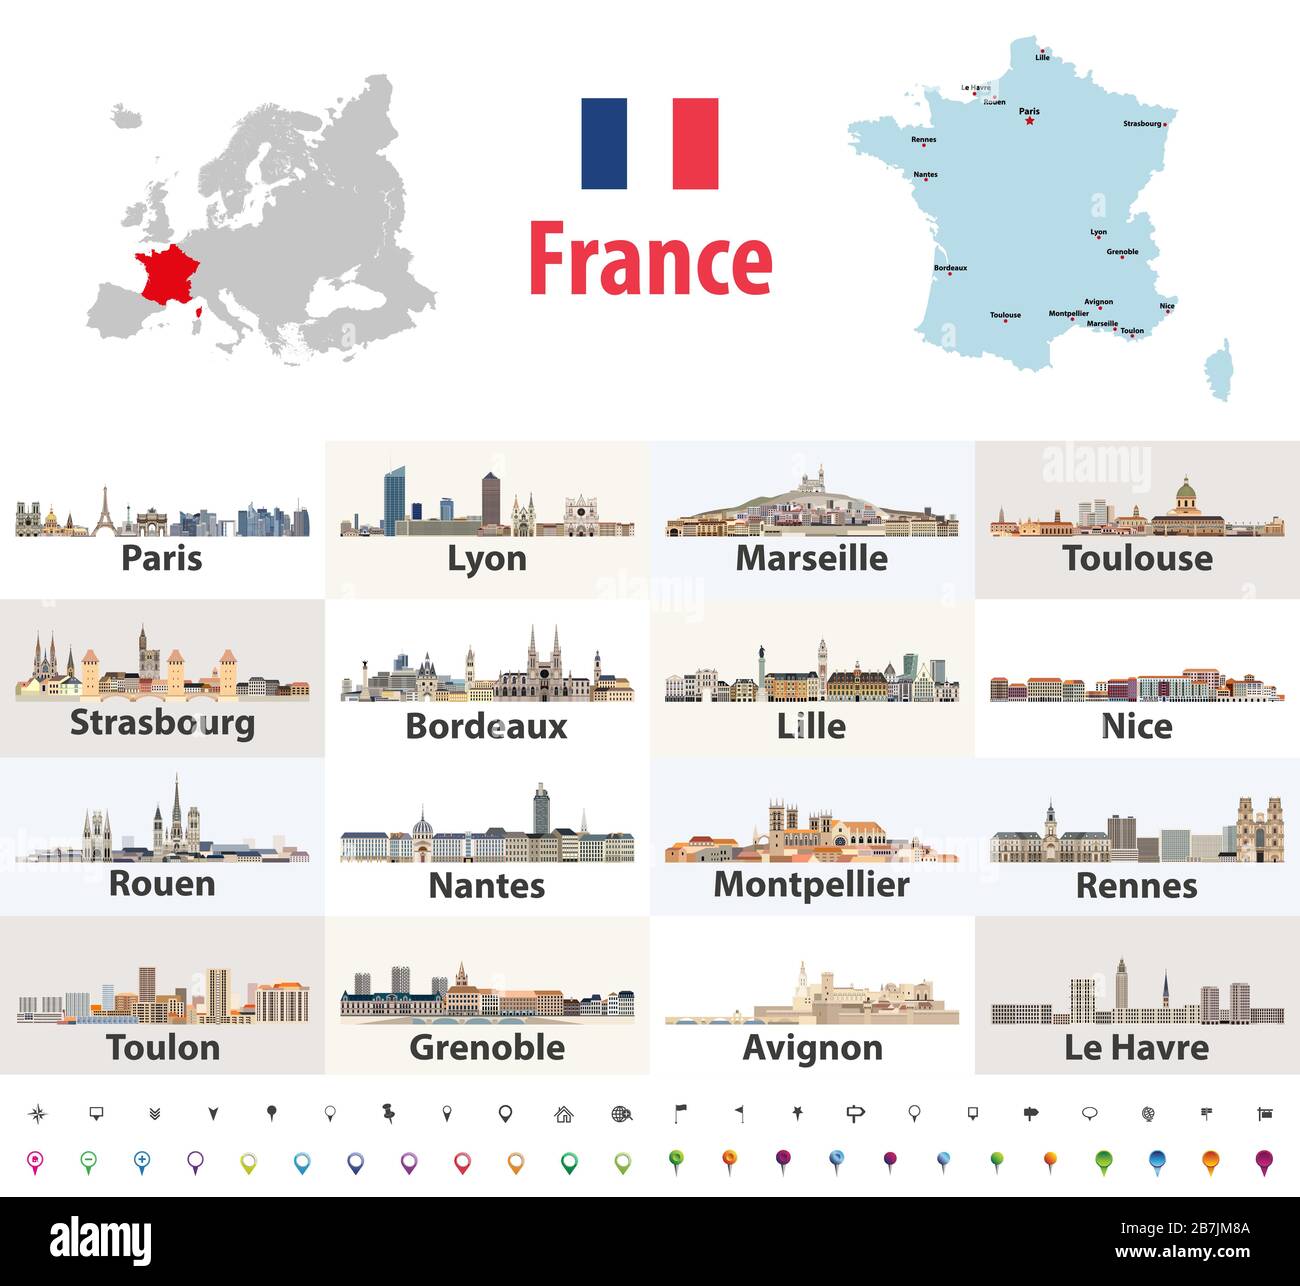 Vektor-Karte von Frankreich mit den wichtigsten Städten. Französische Städte führen Symbole in die Höhe. Navigations- und Ortsschilder gesetzt Stock Vektor